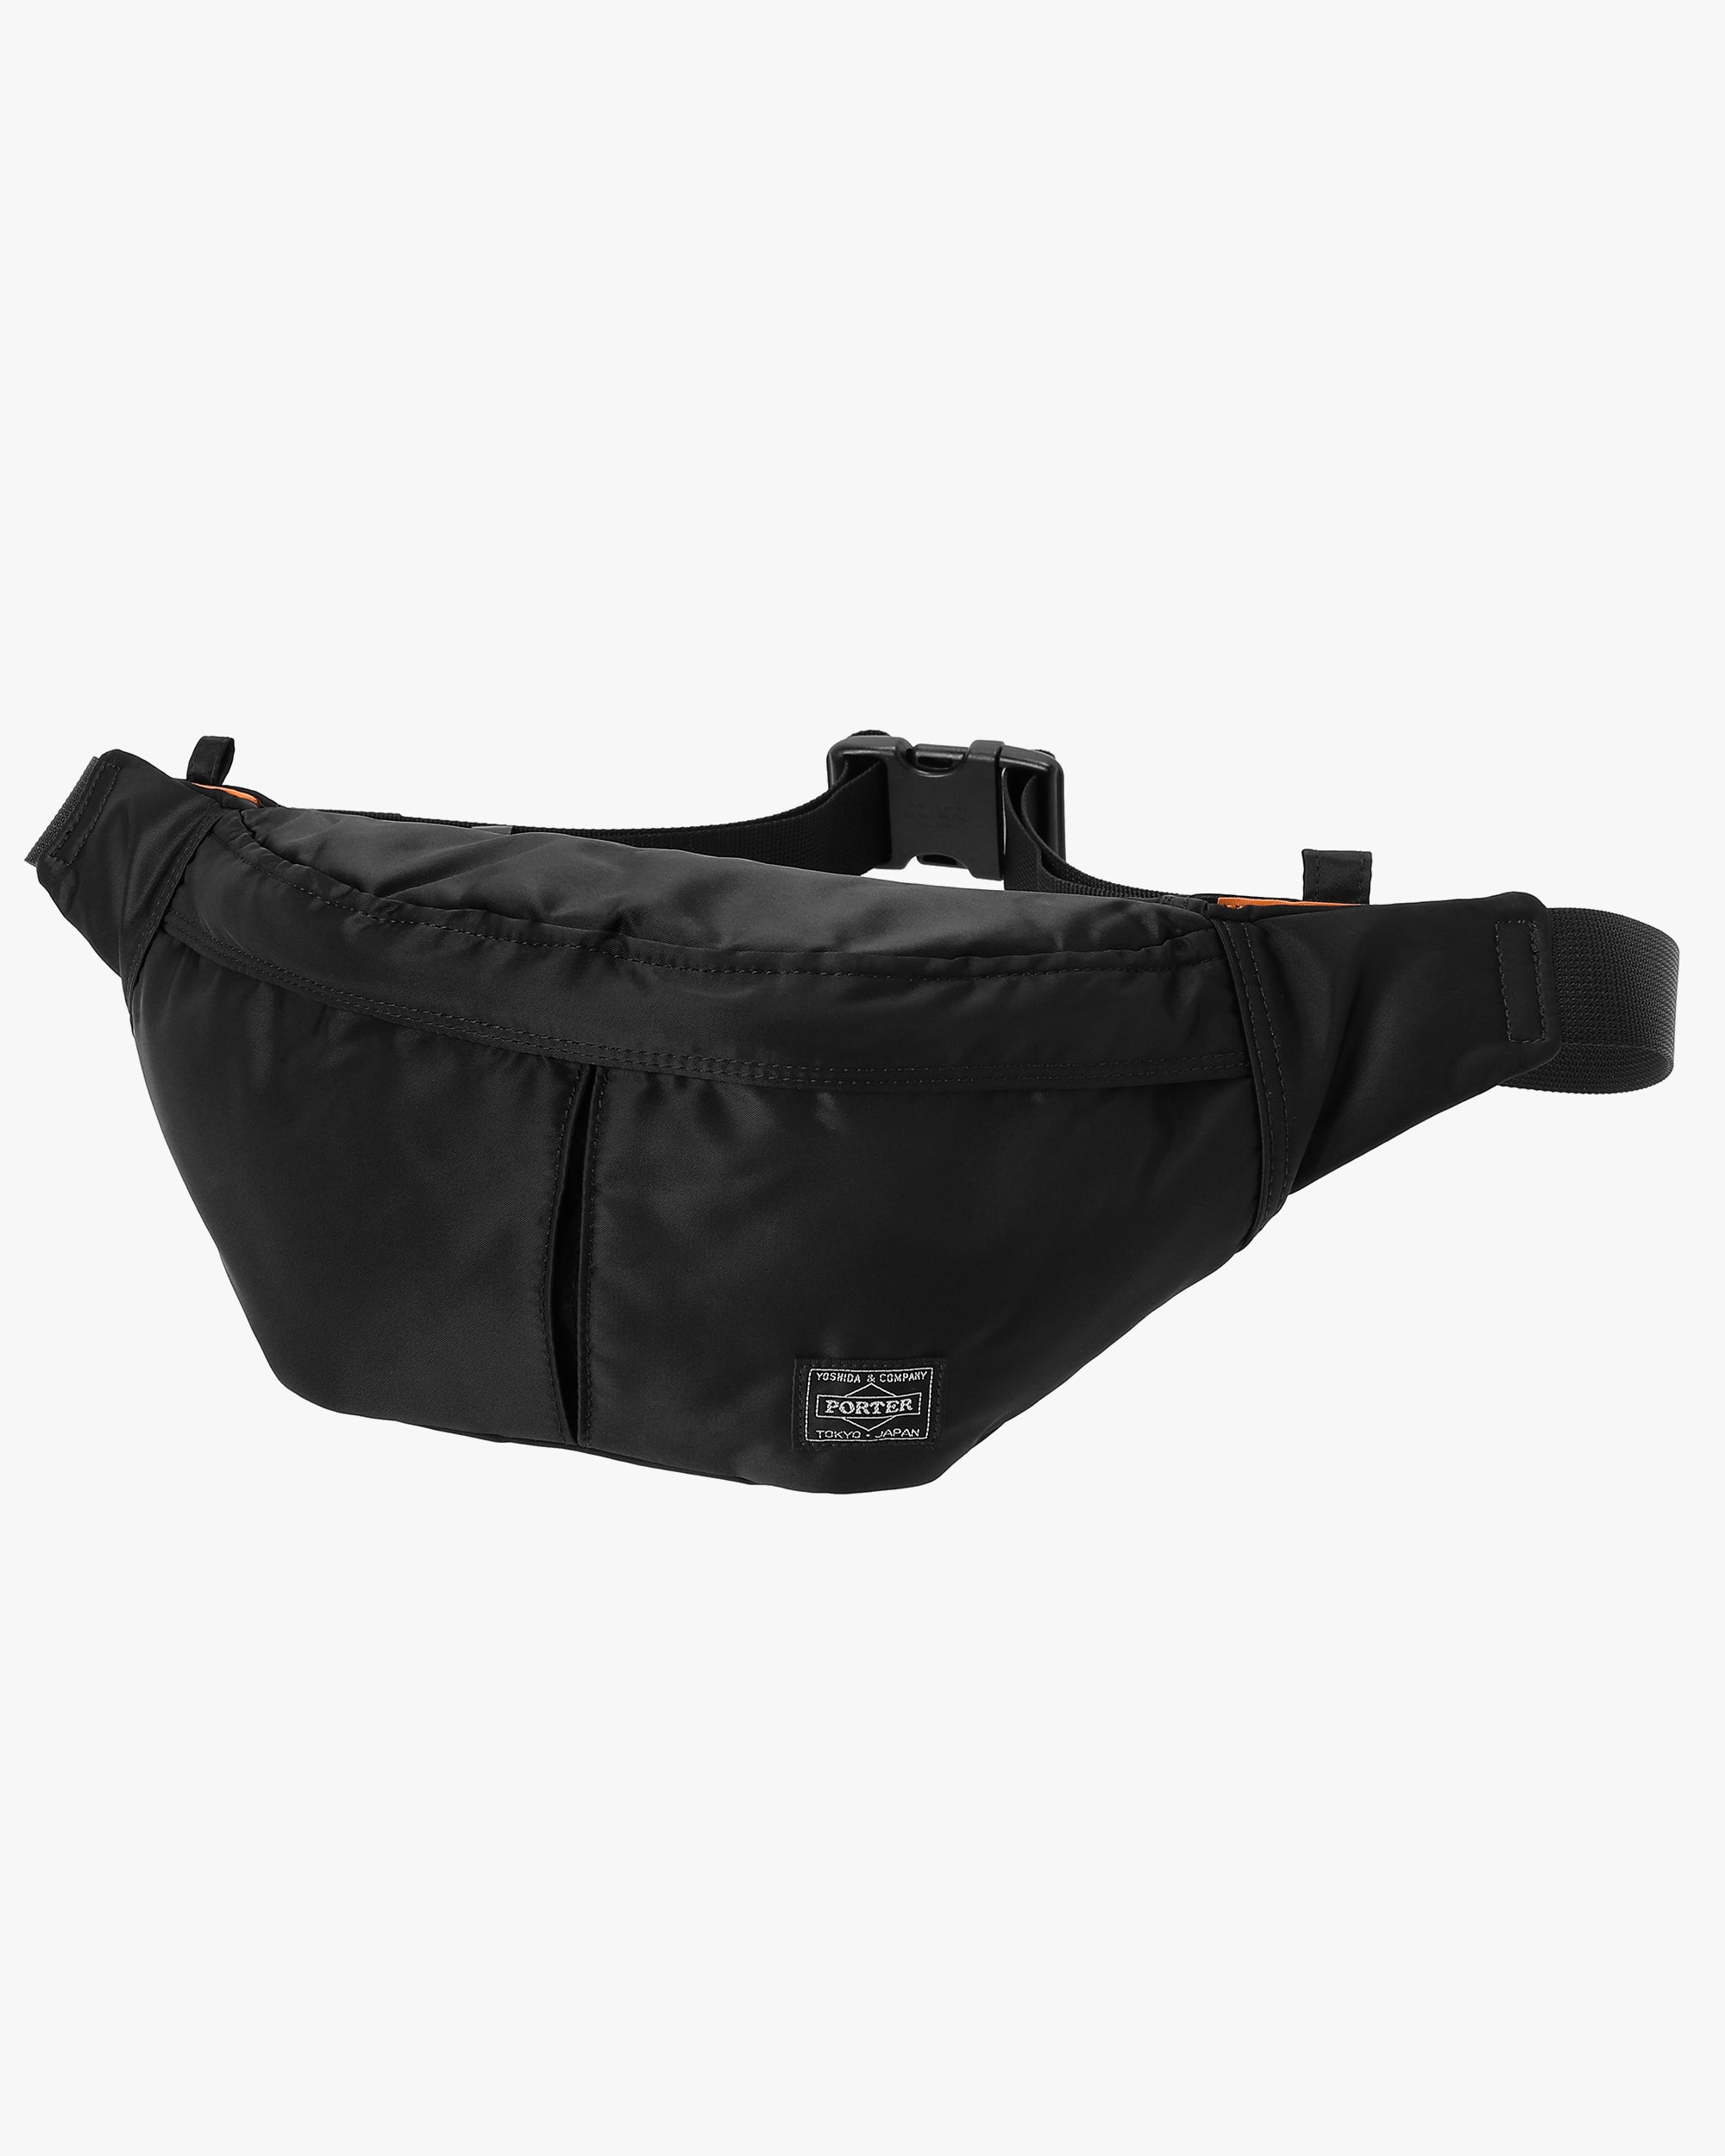 Porter-Yoshida & Co. Tanker Waist Bag S - Black